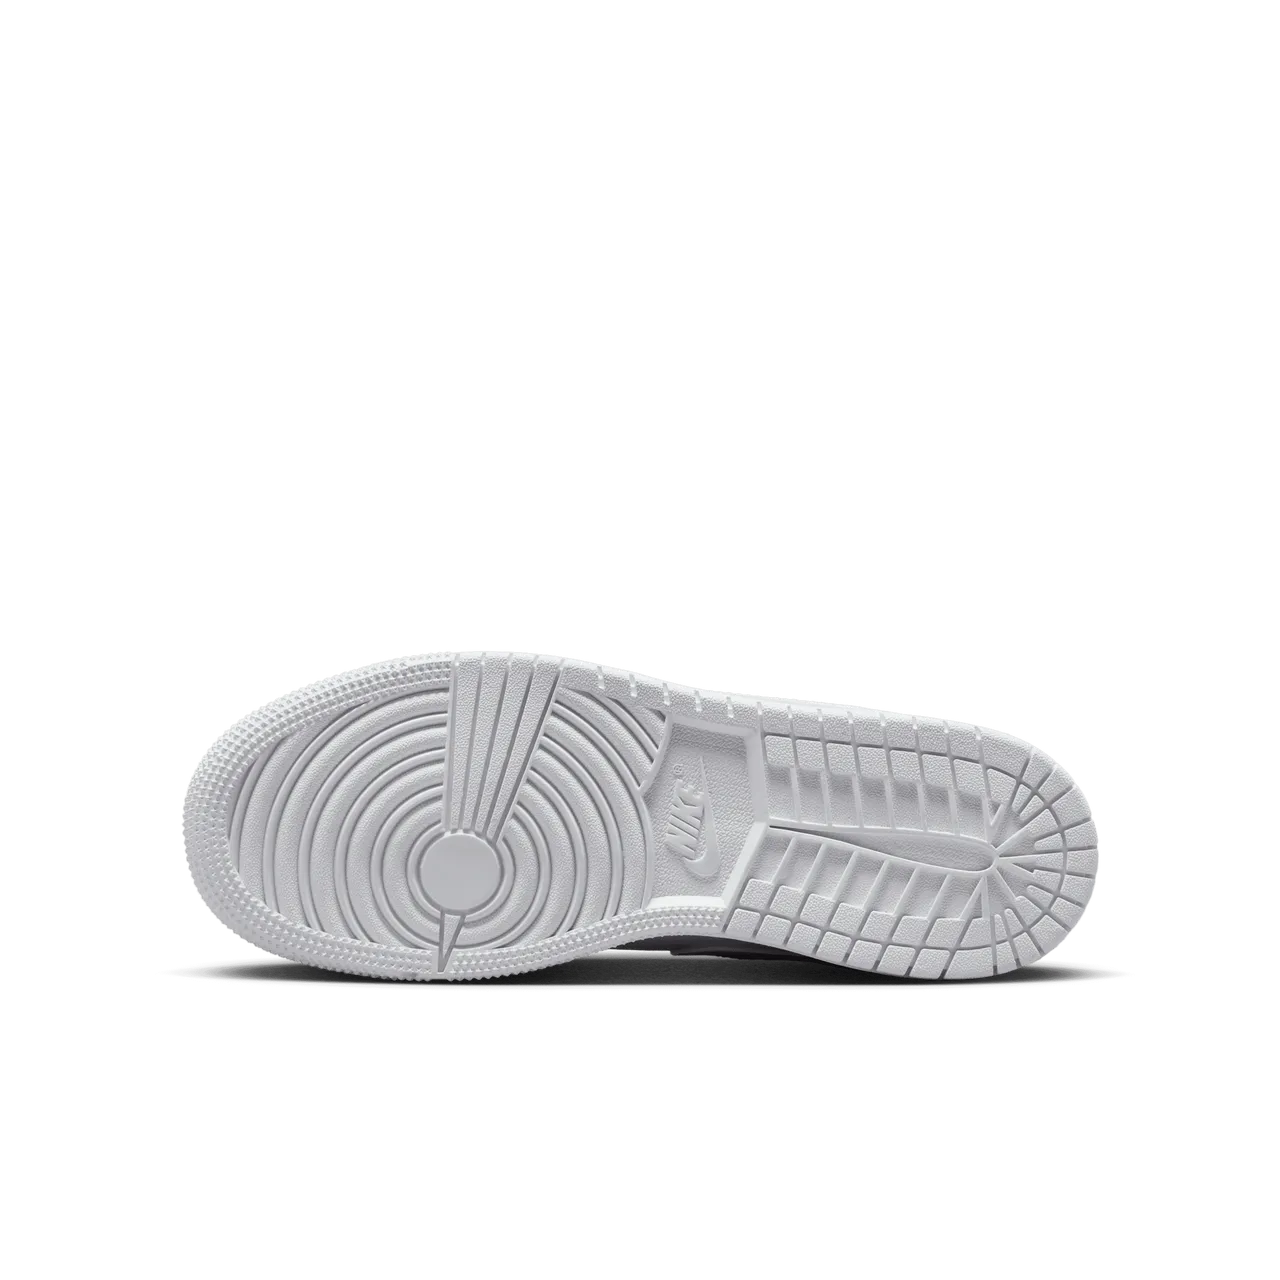 Air Jordan 1 Low Schuh für ältere Kinder - Weiß